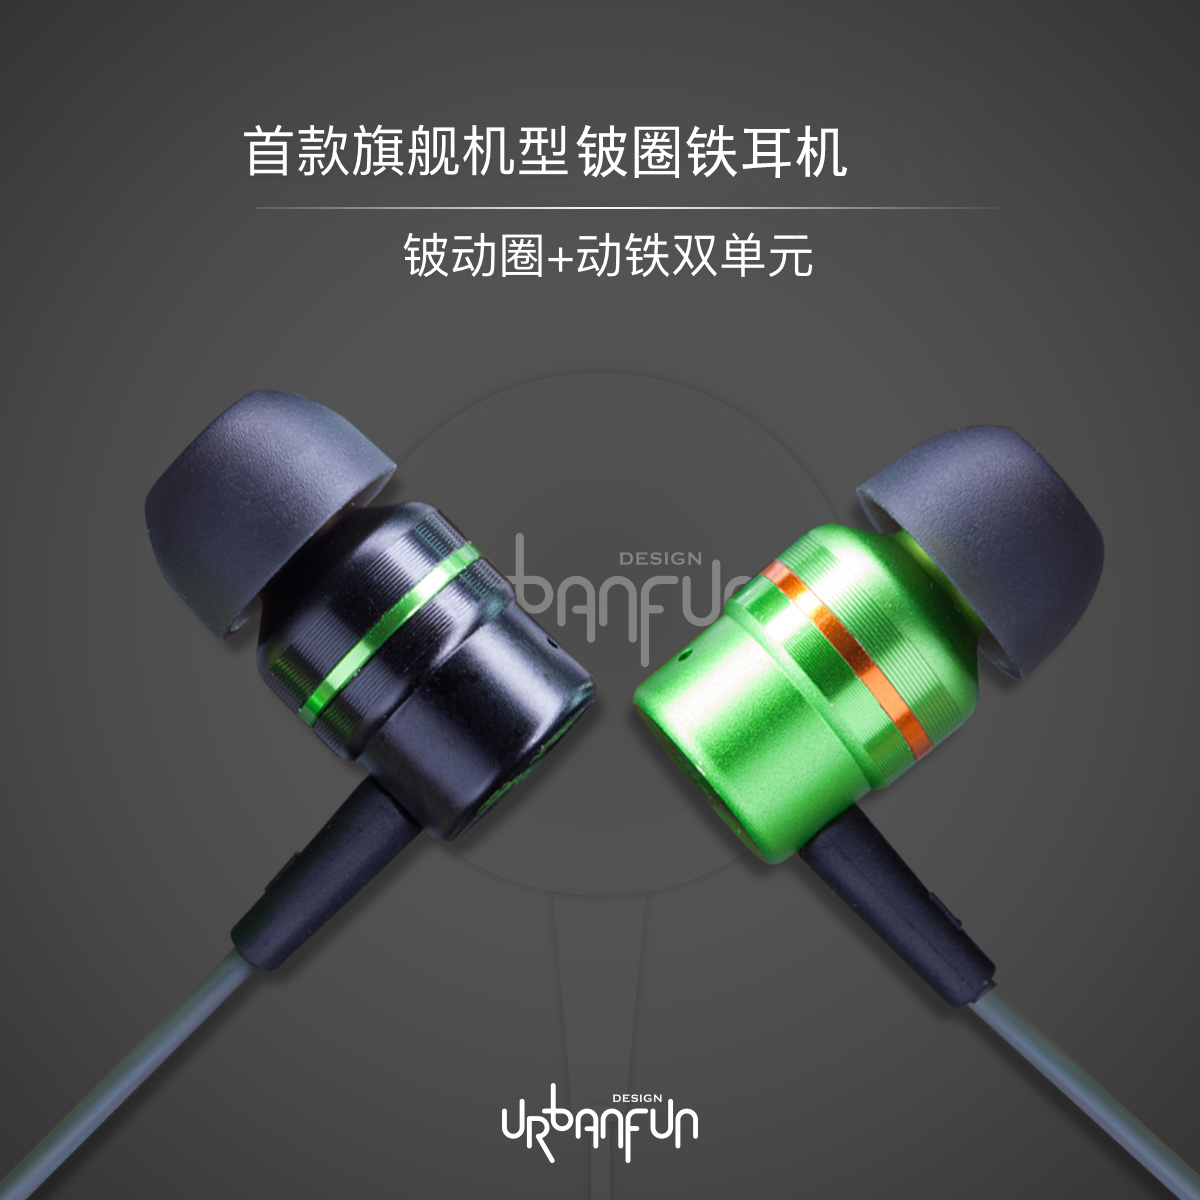 Urbanfundia Monkey Beryllium Ring Iron Earphone HIFI Professional Movable Iron Earplug High Sound Quality